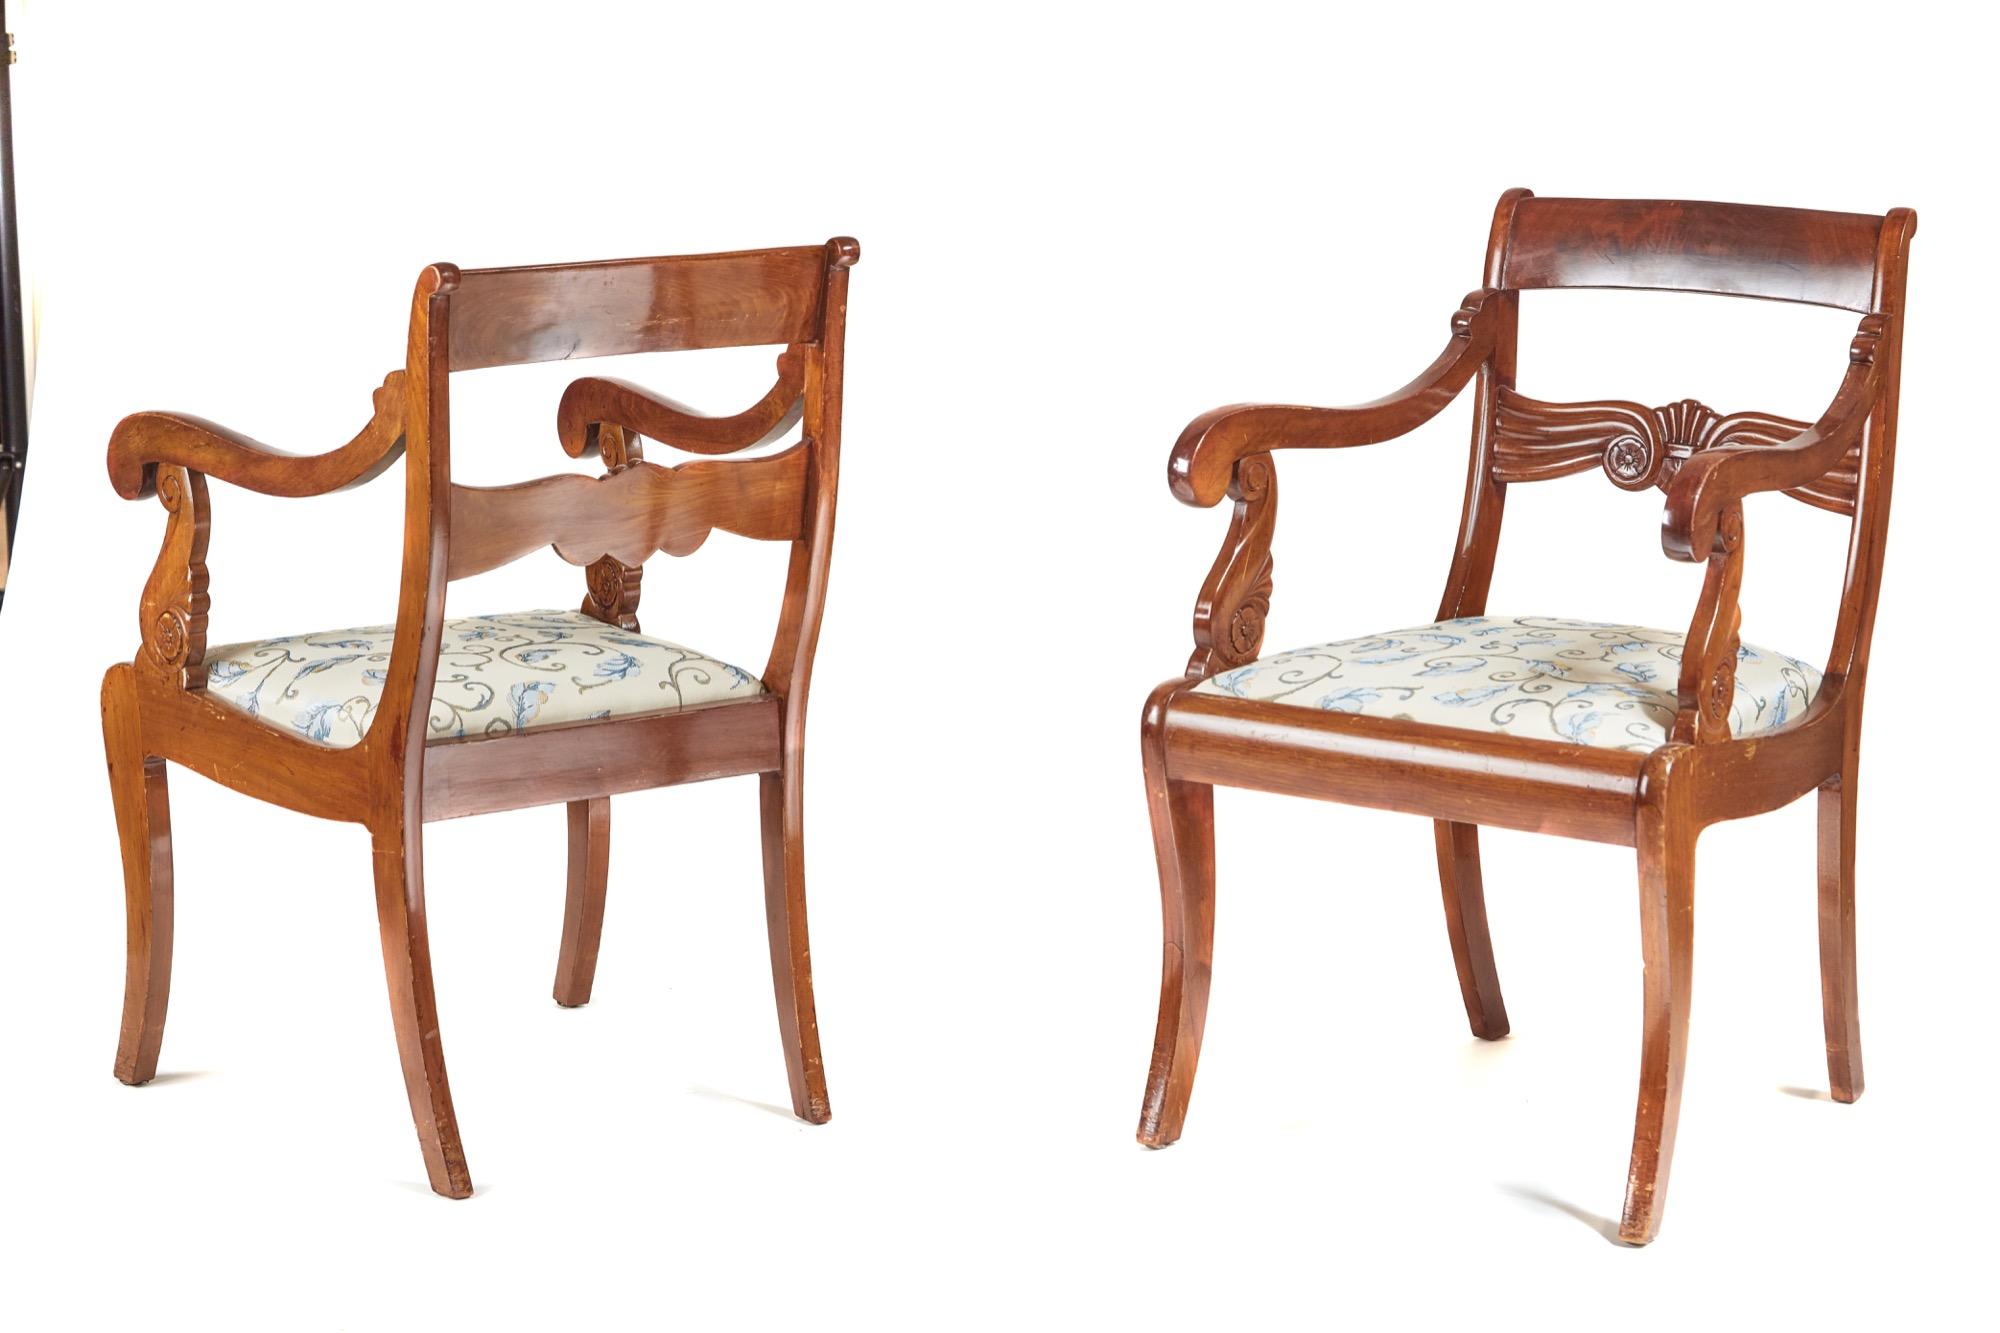 Il s'agit d'une paire de chaises de sculpteur françaises anciennes du 19ème siècle en acajou. La traverse supérieure présente un attrayant placage d'acajou flammé au centre de la traverse sculptée. Ils ont de jolis bras en forme de volutes, les